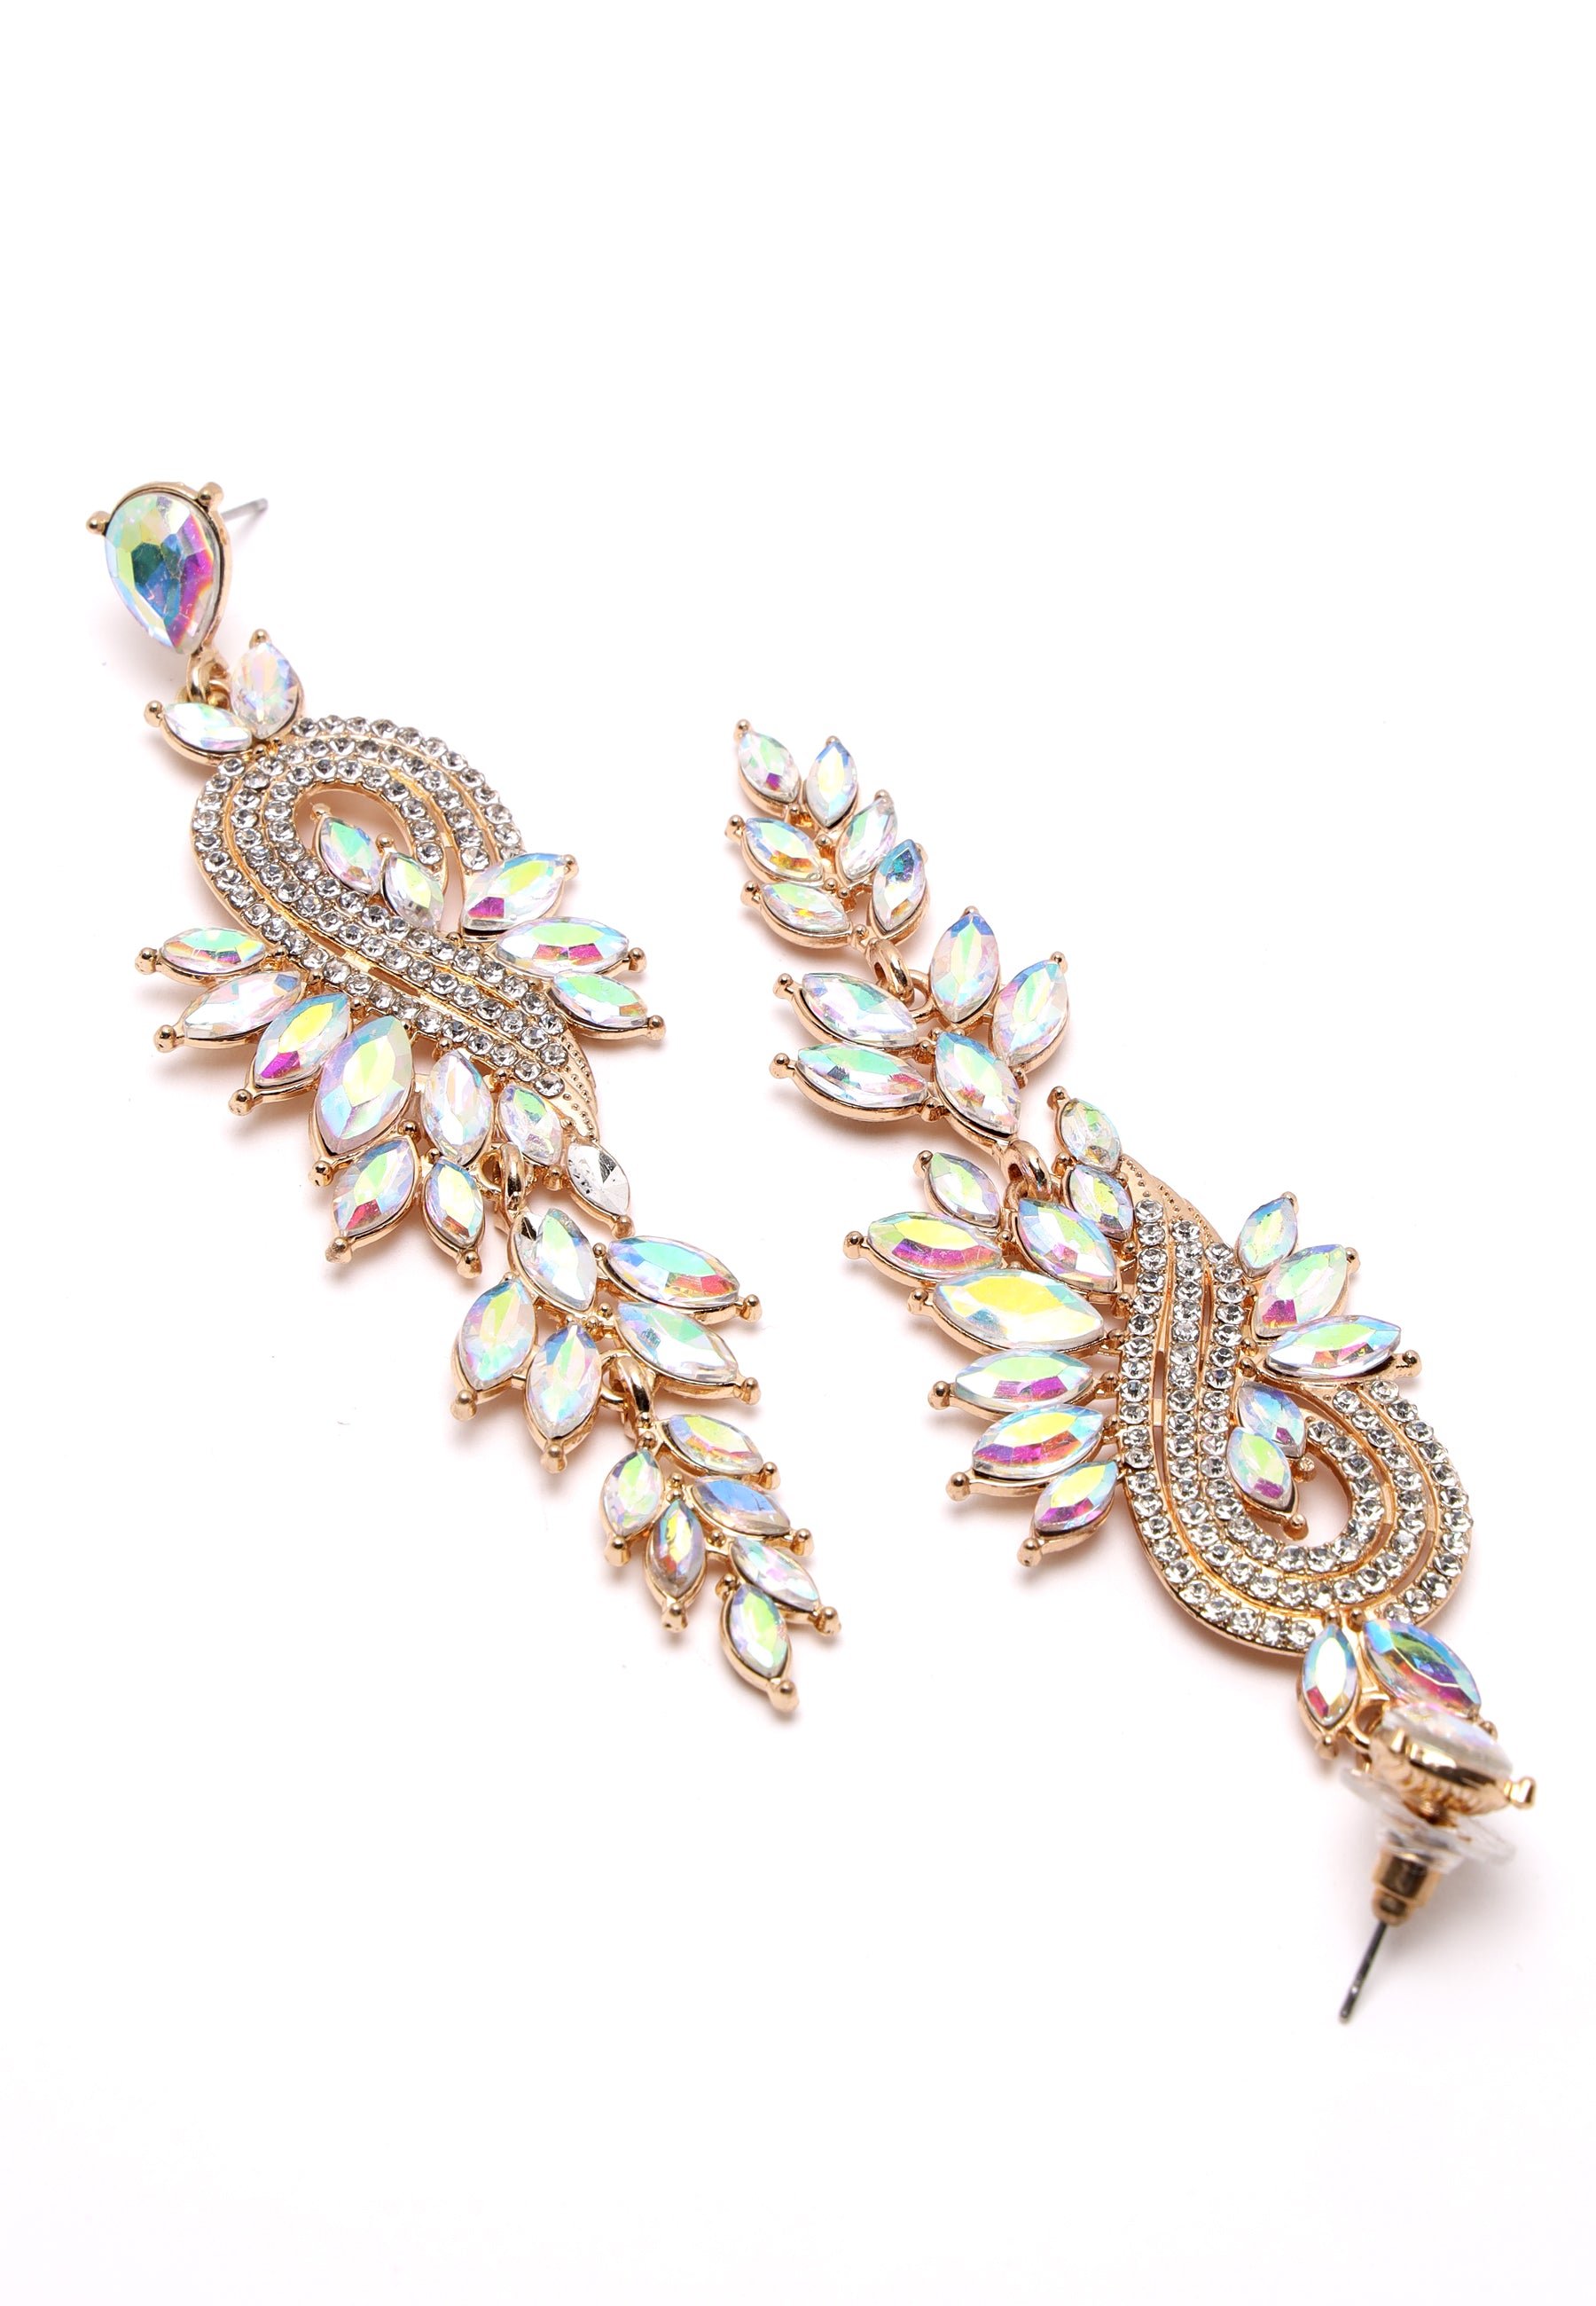 Luxury Heart and leaf chandelier earrings